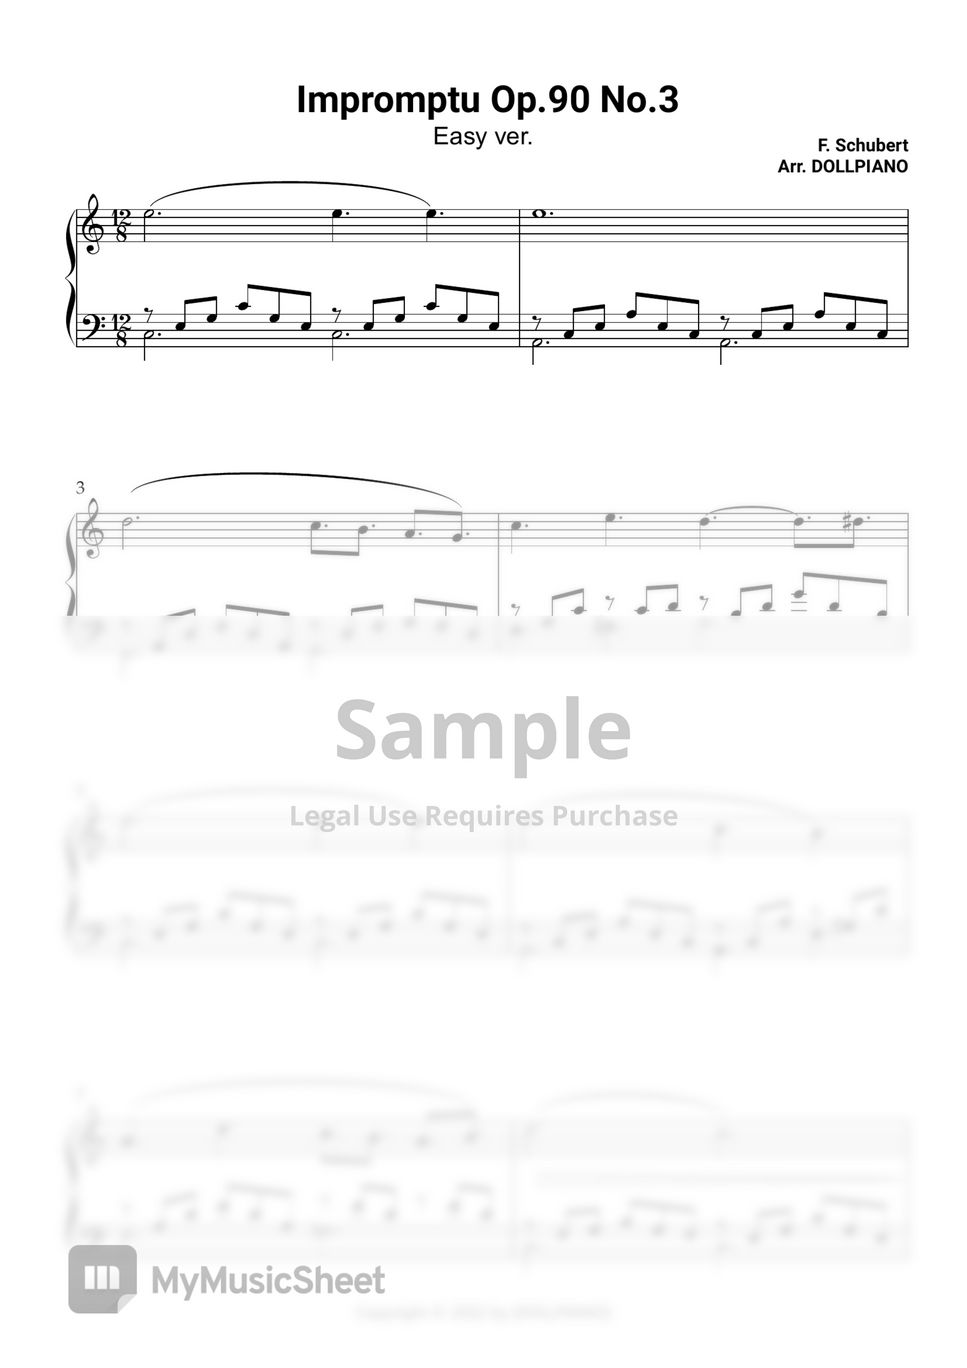 F. Schubert - impromptu Op.90 No.3 (Easy ver. (C key)) by DOLLPIANO